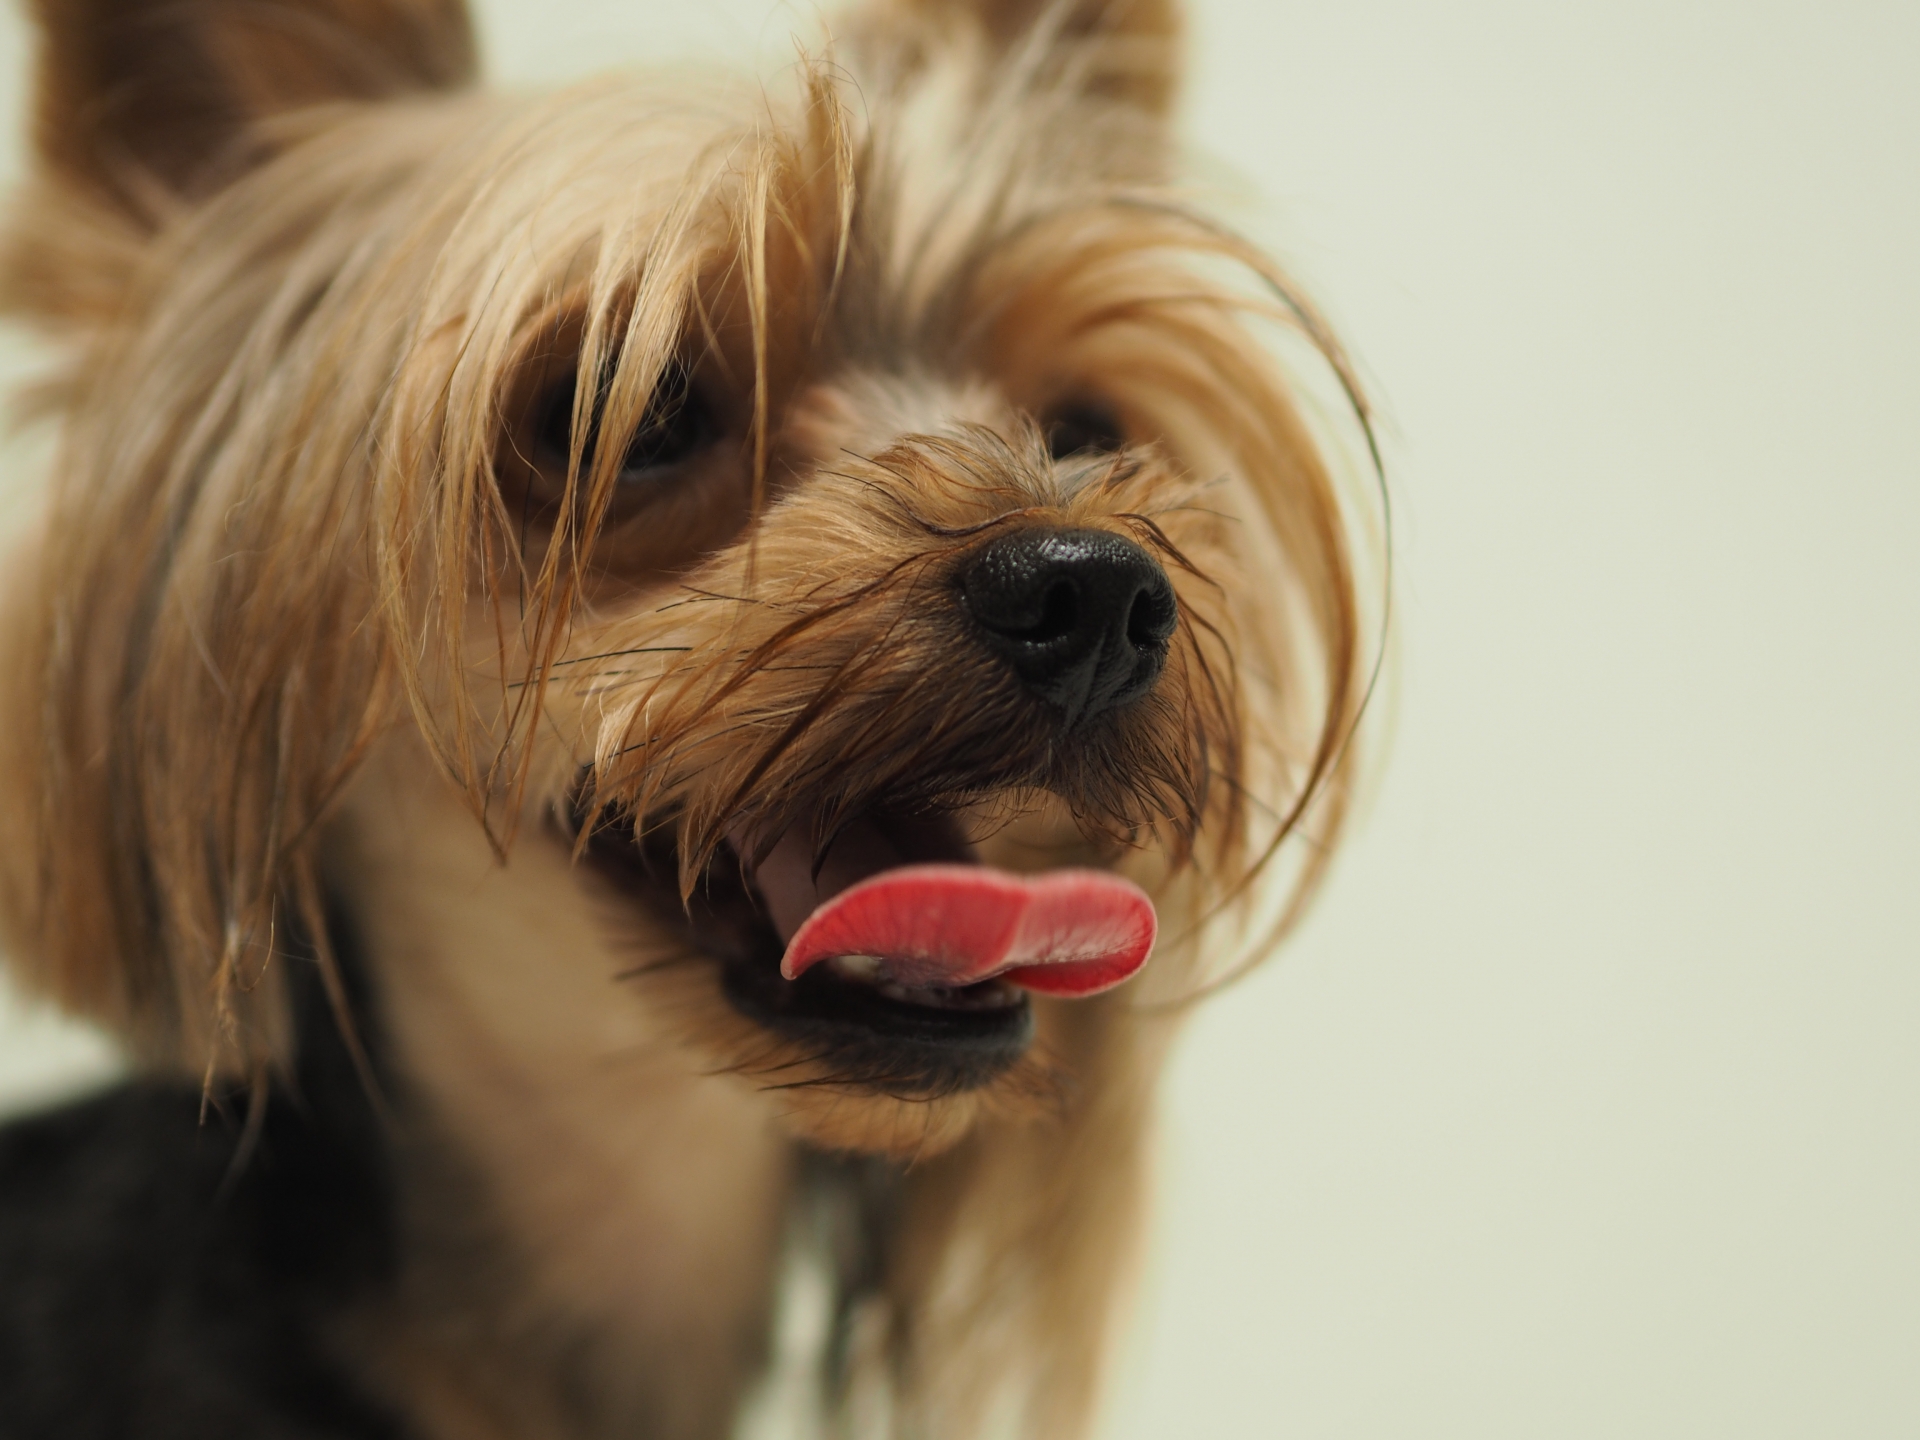 犬が舌を出す理由 嬉しい笑顔の意味や病気やストレスなど様々なサインから感情をくみ取る方法を解説 生涯使える知恵袋